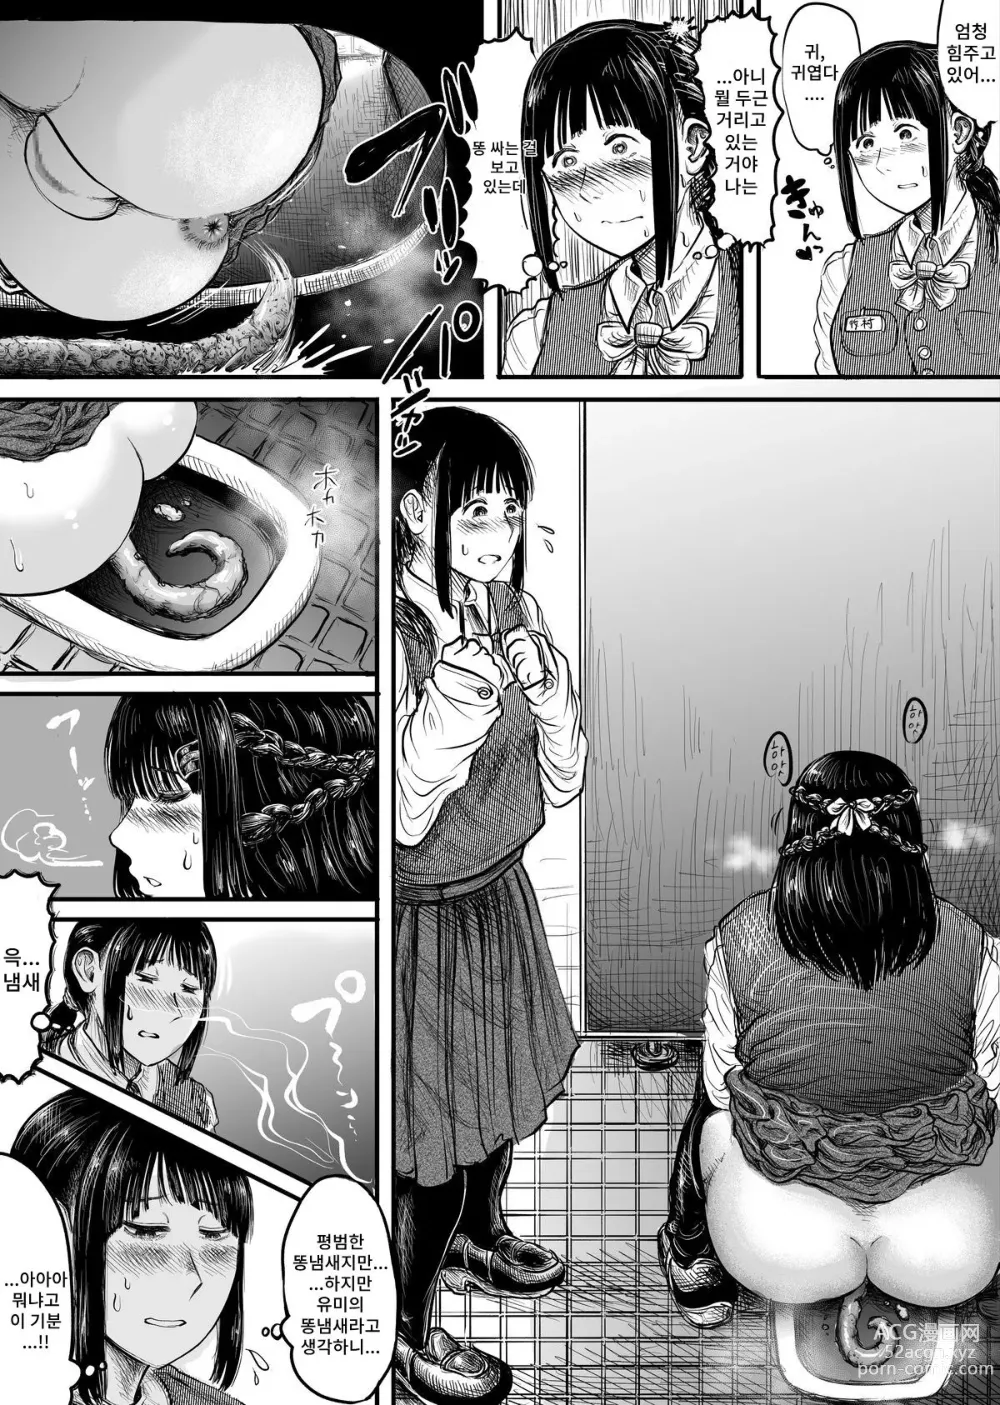 Page 6 of doujinshi Tonari no Seki no Ko ni Haisetsu Sugata o Misetsukerareru Manga